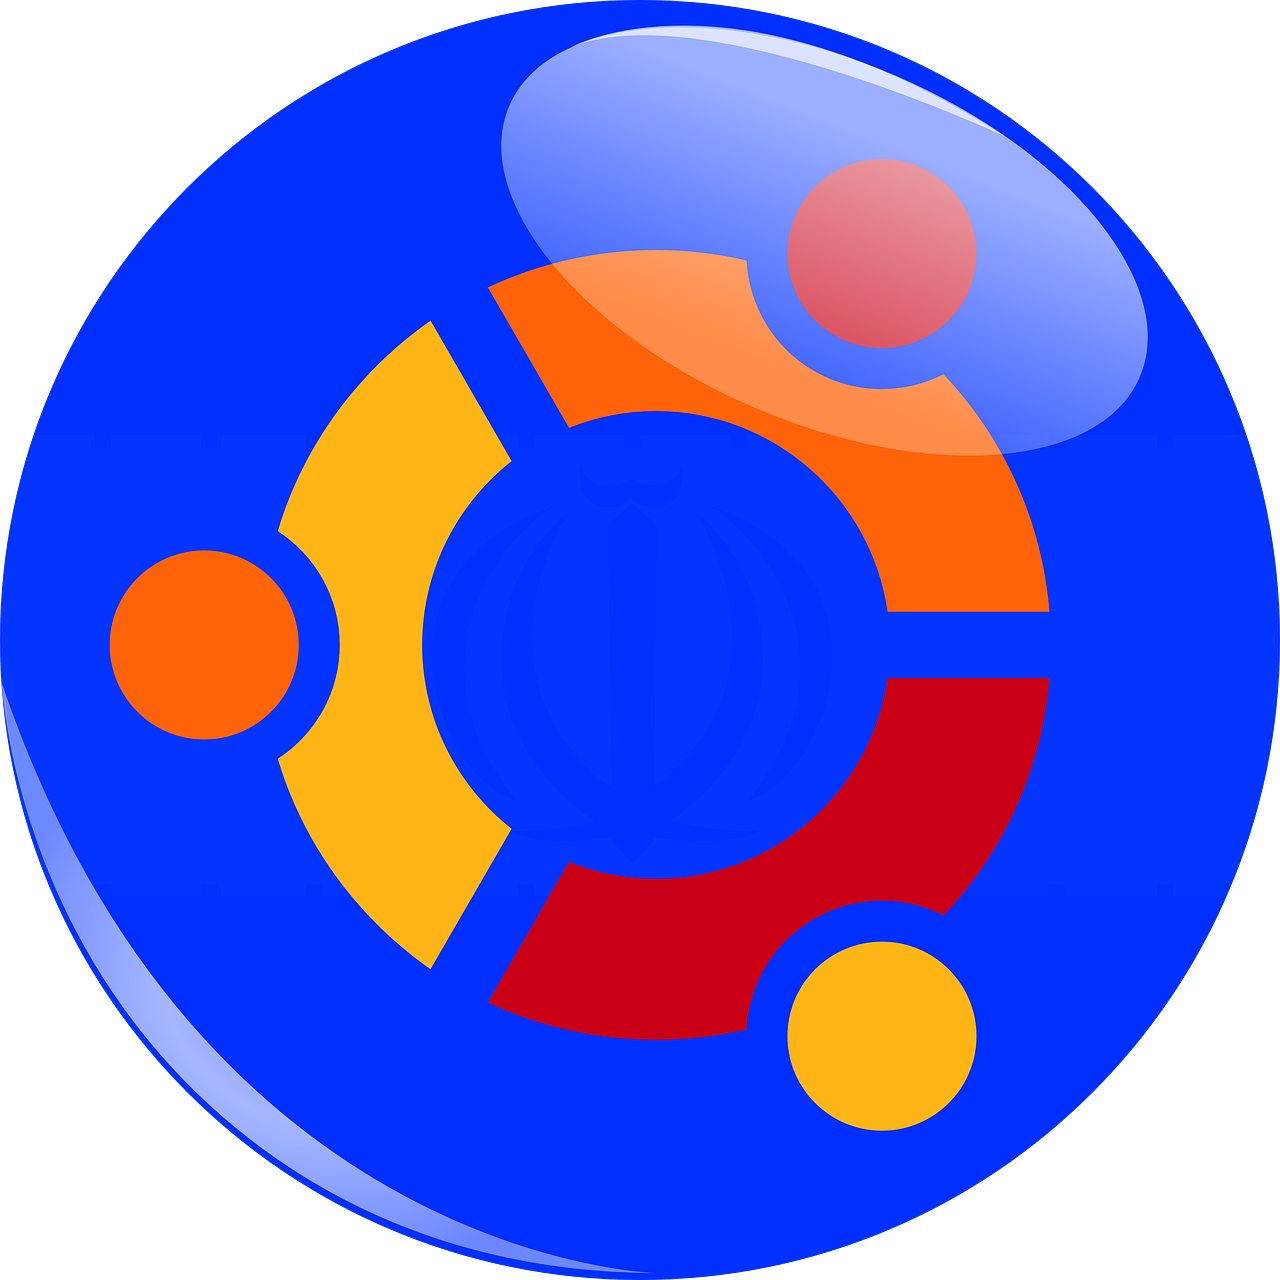 ubuntu logo ubuntu logo free photo